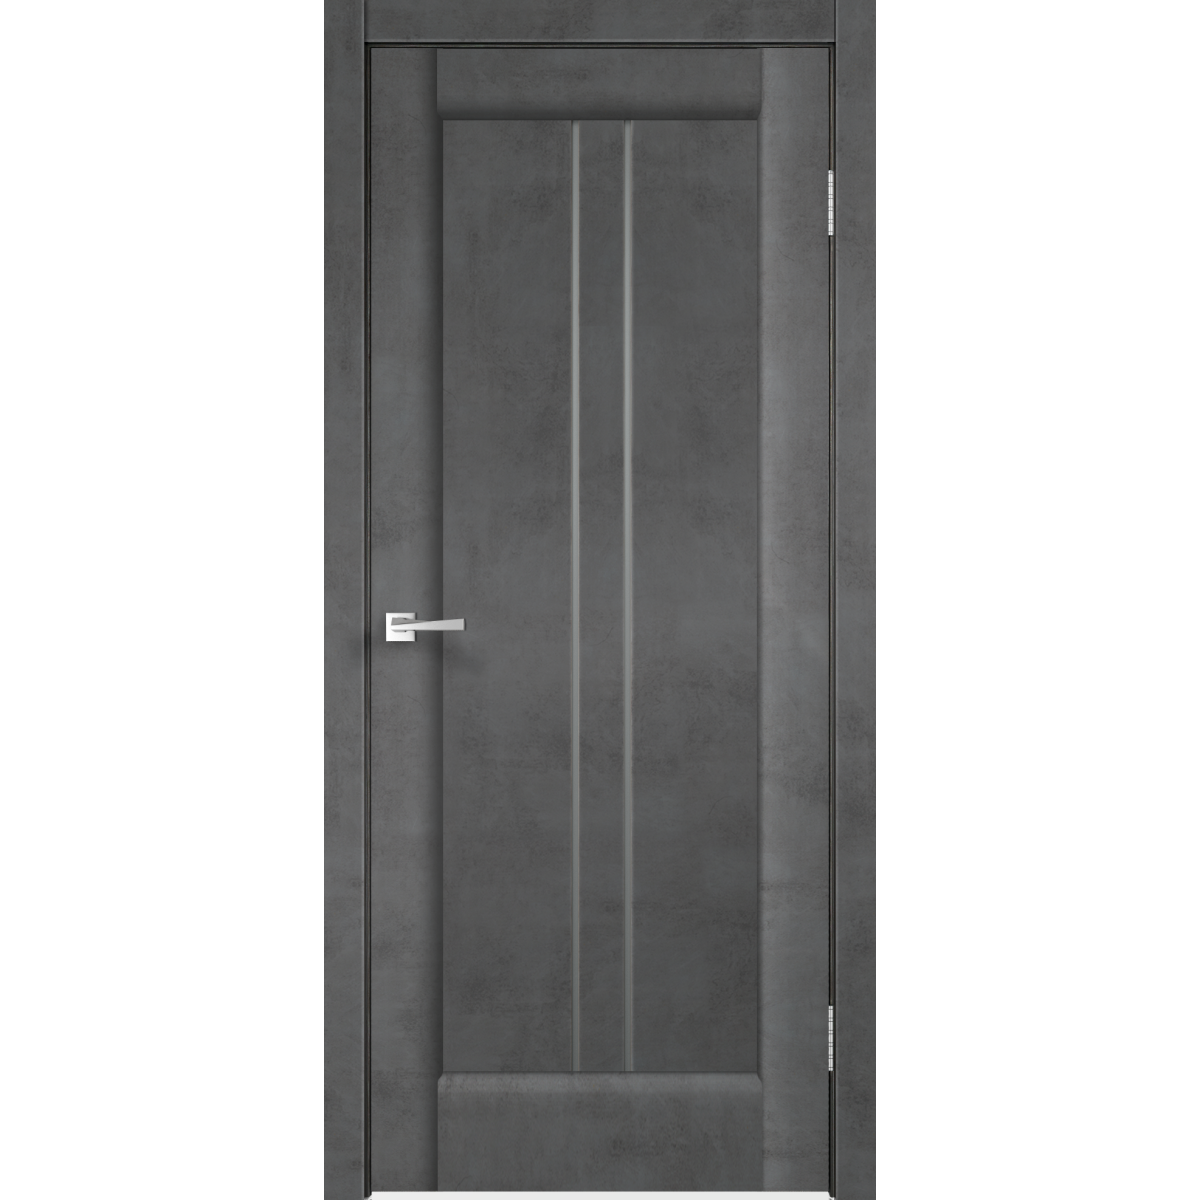 Дверь межкомнатная остеклённая «Сиэтл», 80x200 см, ПВХ, цвет лофт тёмный, с фурнитурой